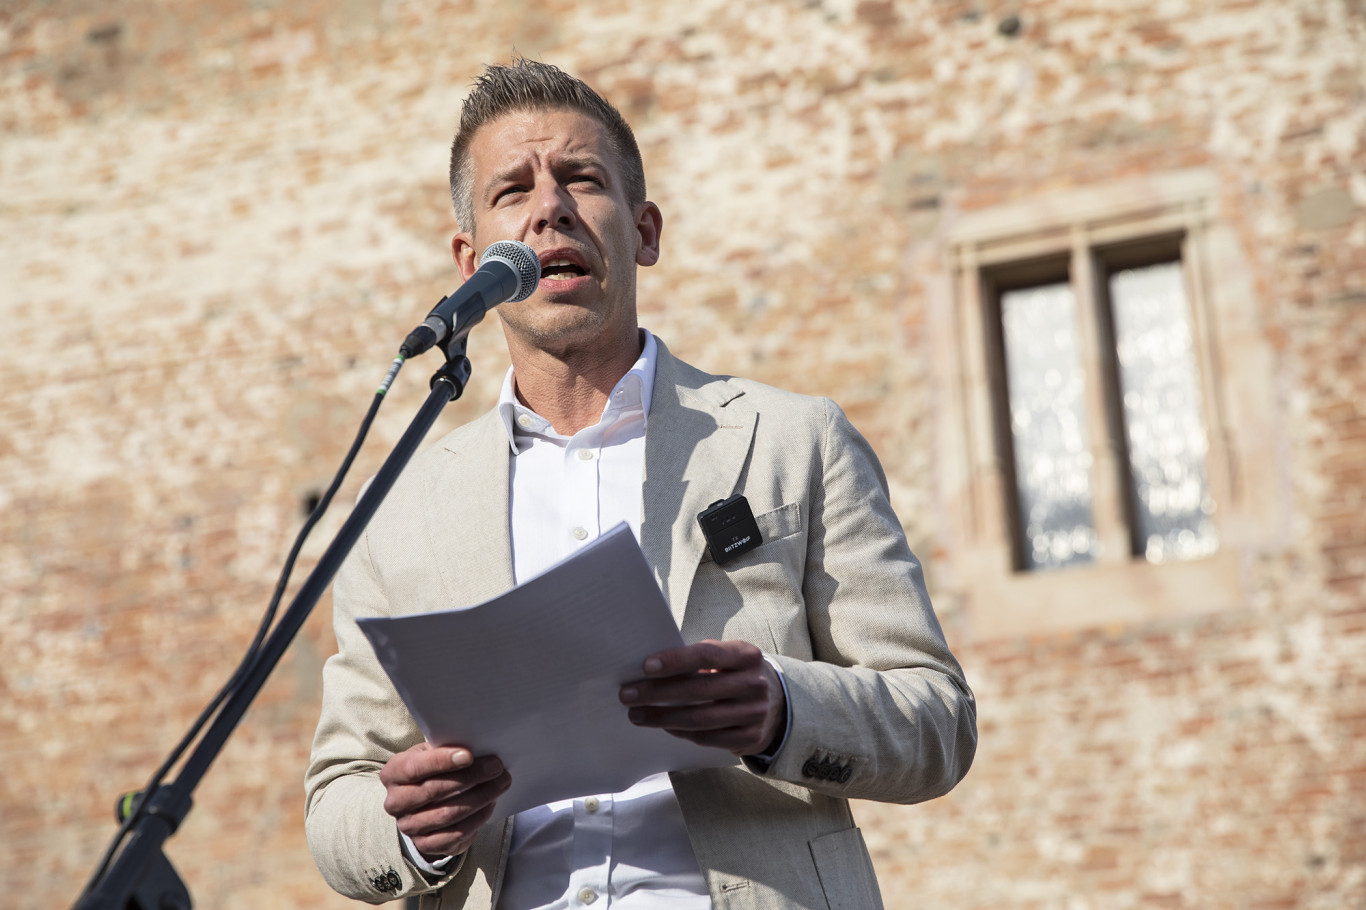 A tiszavirág életű 7. kerületi próbálkozás után Kőbányán talált új jelöltet a Tisza Párt